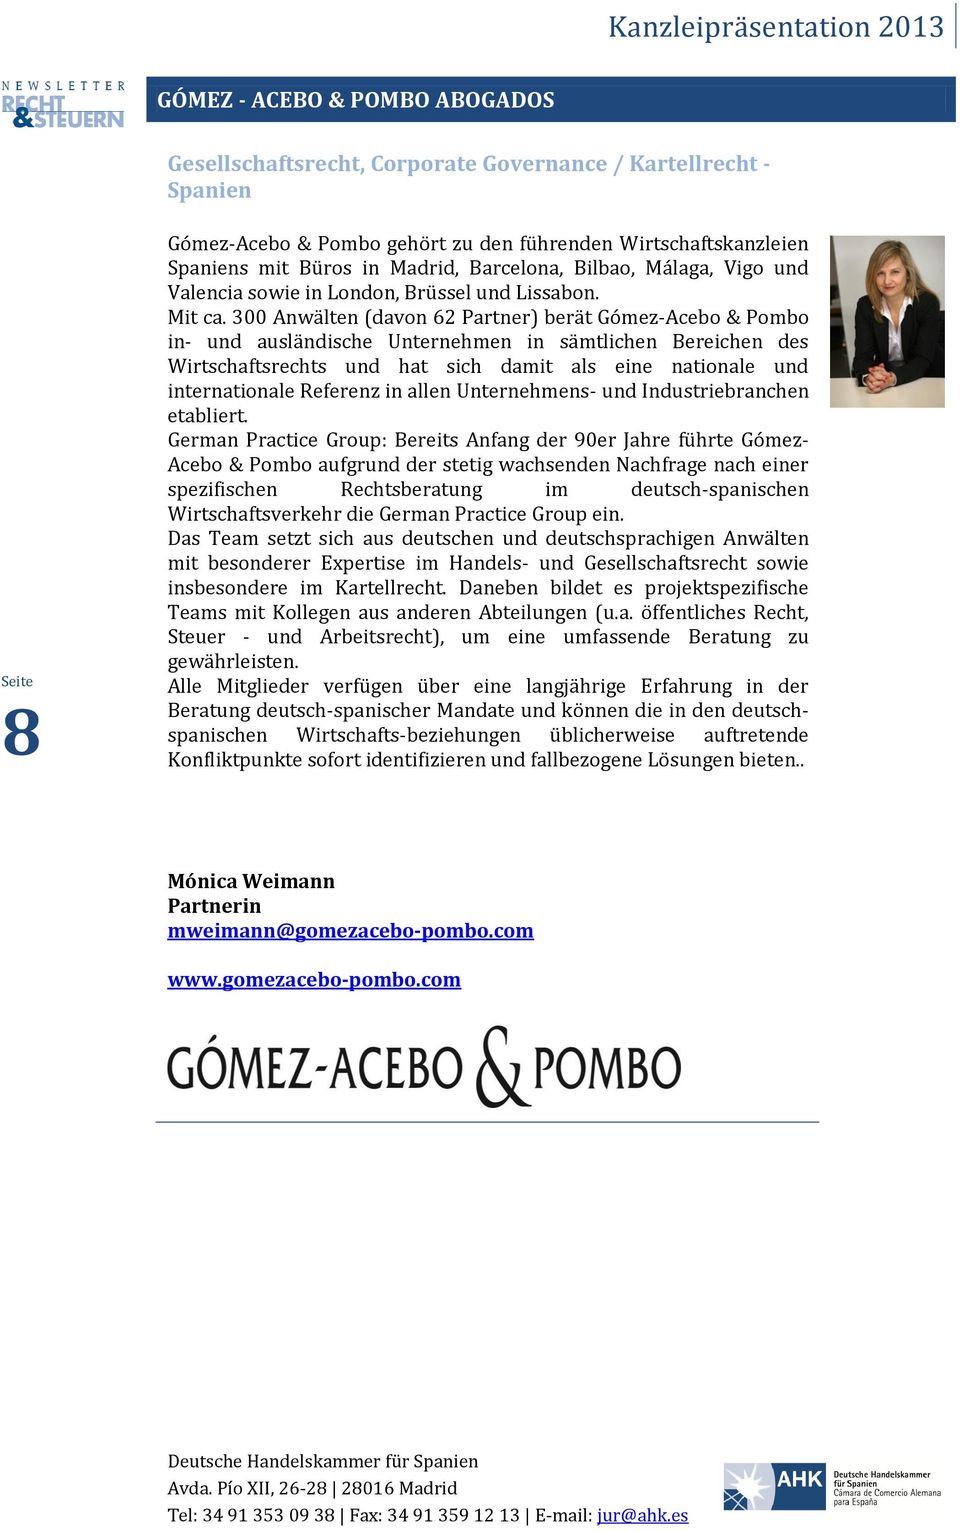 300 Anwälten (davon 62 Partner) berät Gómez-Acebo & Pombo in- und ausländische Unternehmen in sämtlichen Bereichen des Wirtschaftsrechts und hat sich damit als eine nationale und internationale